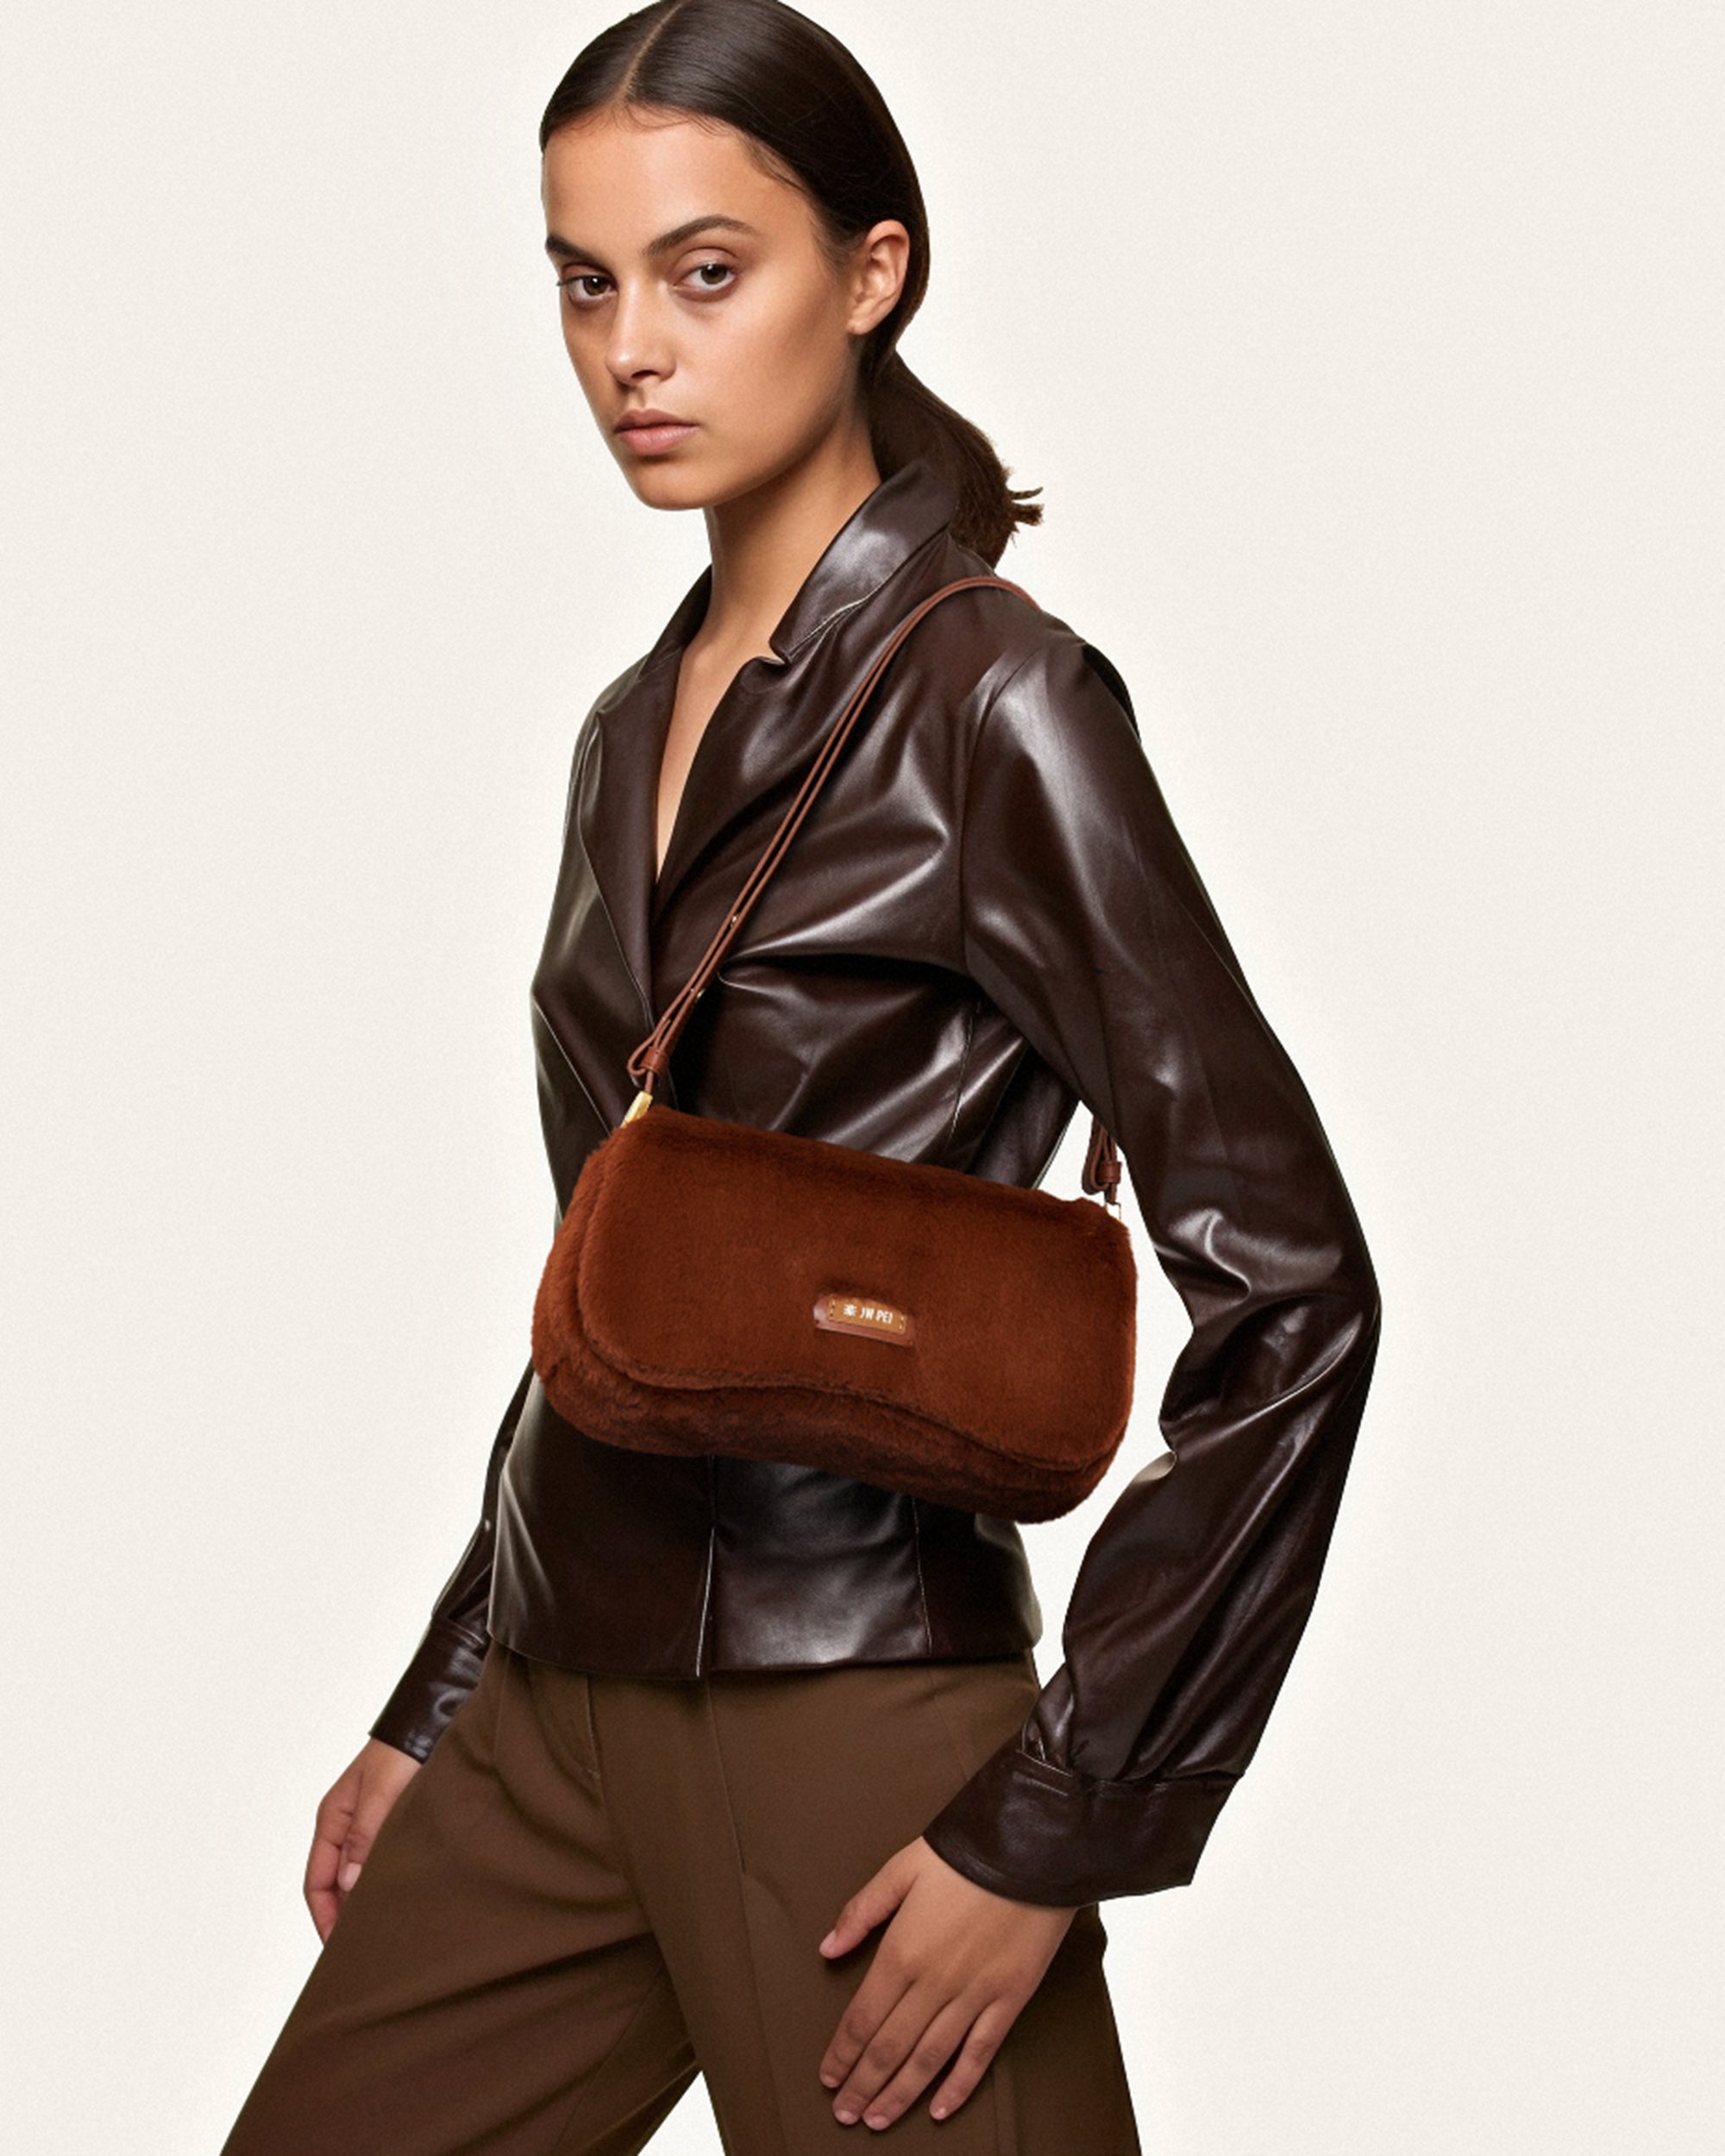 Vegan leather handbag JW PEI Black in Vegan leather - 34171057